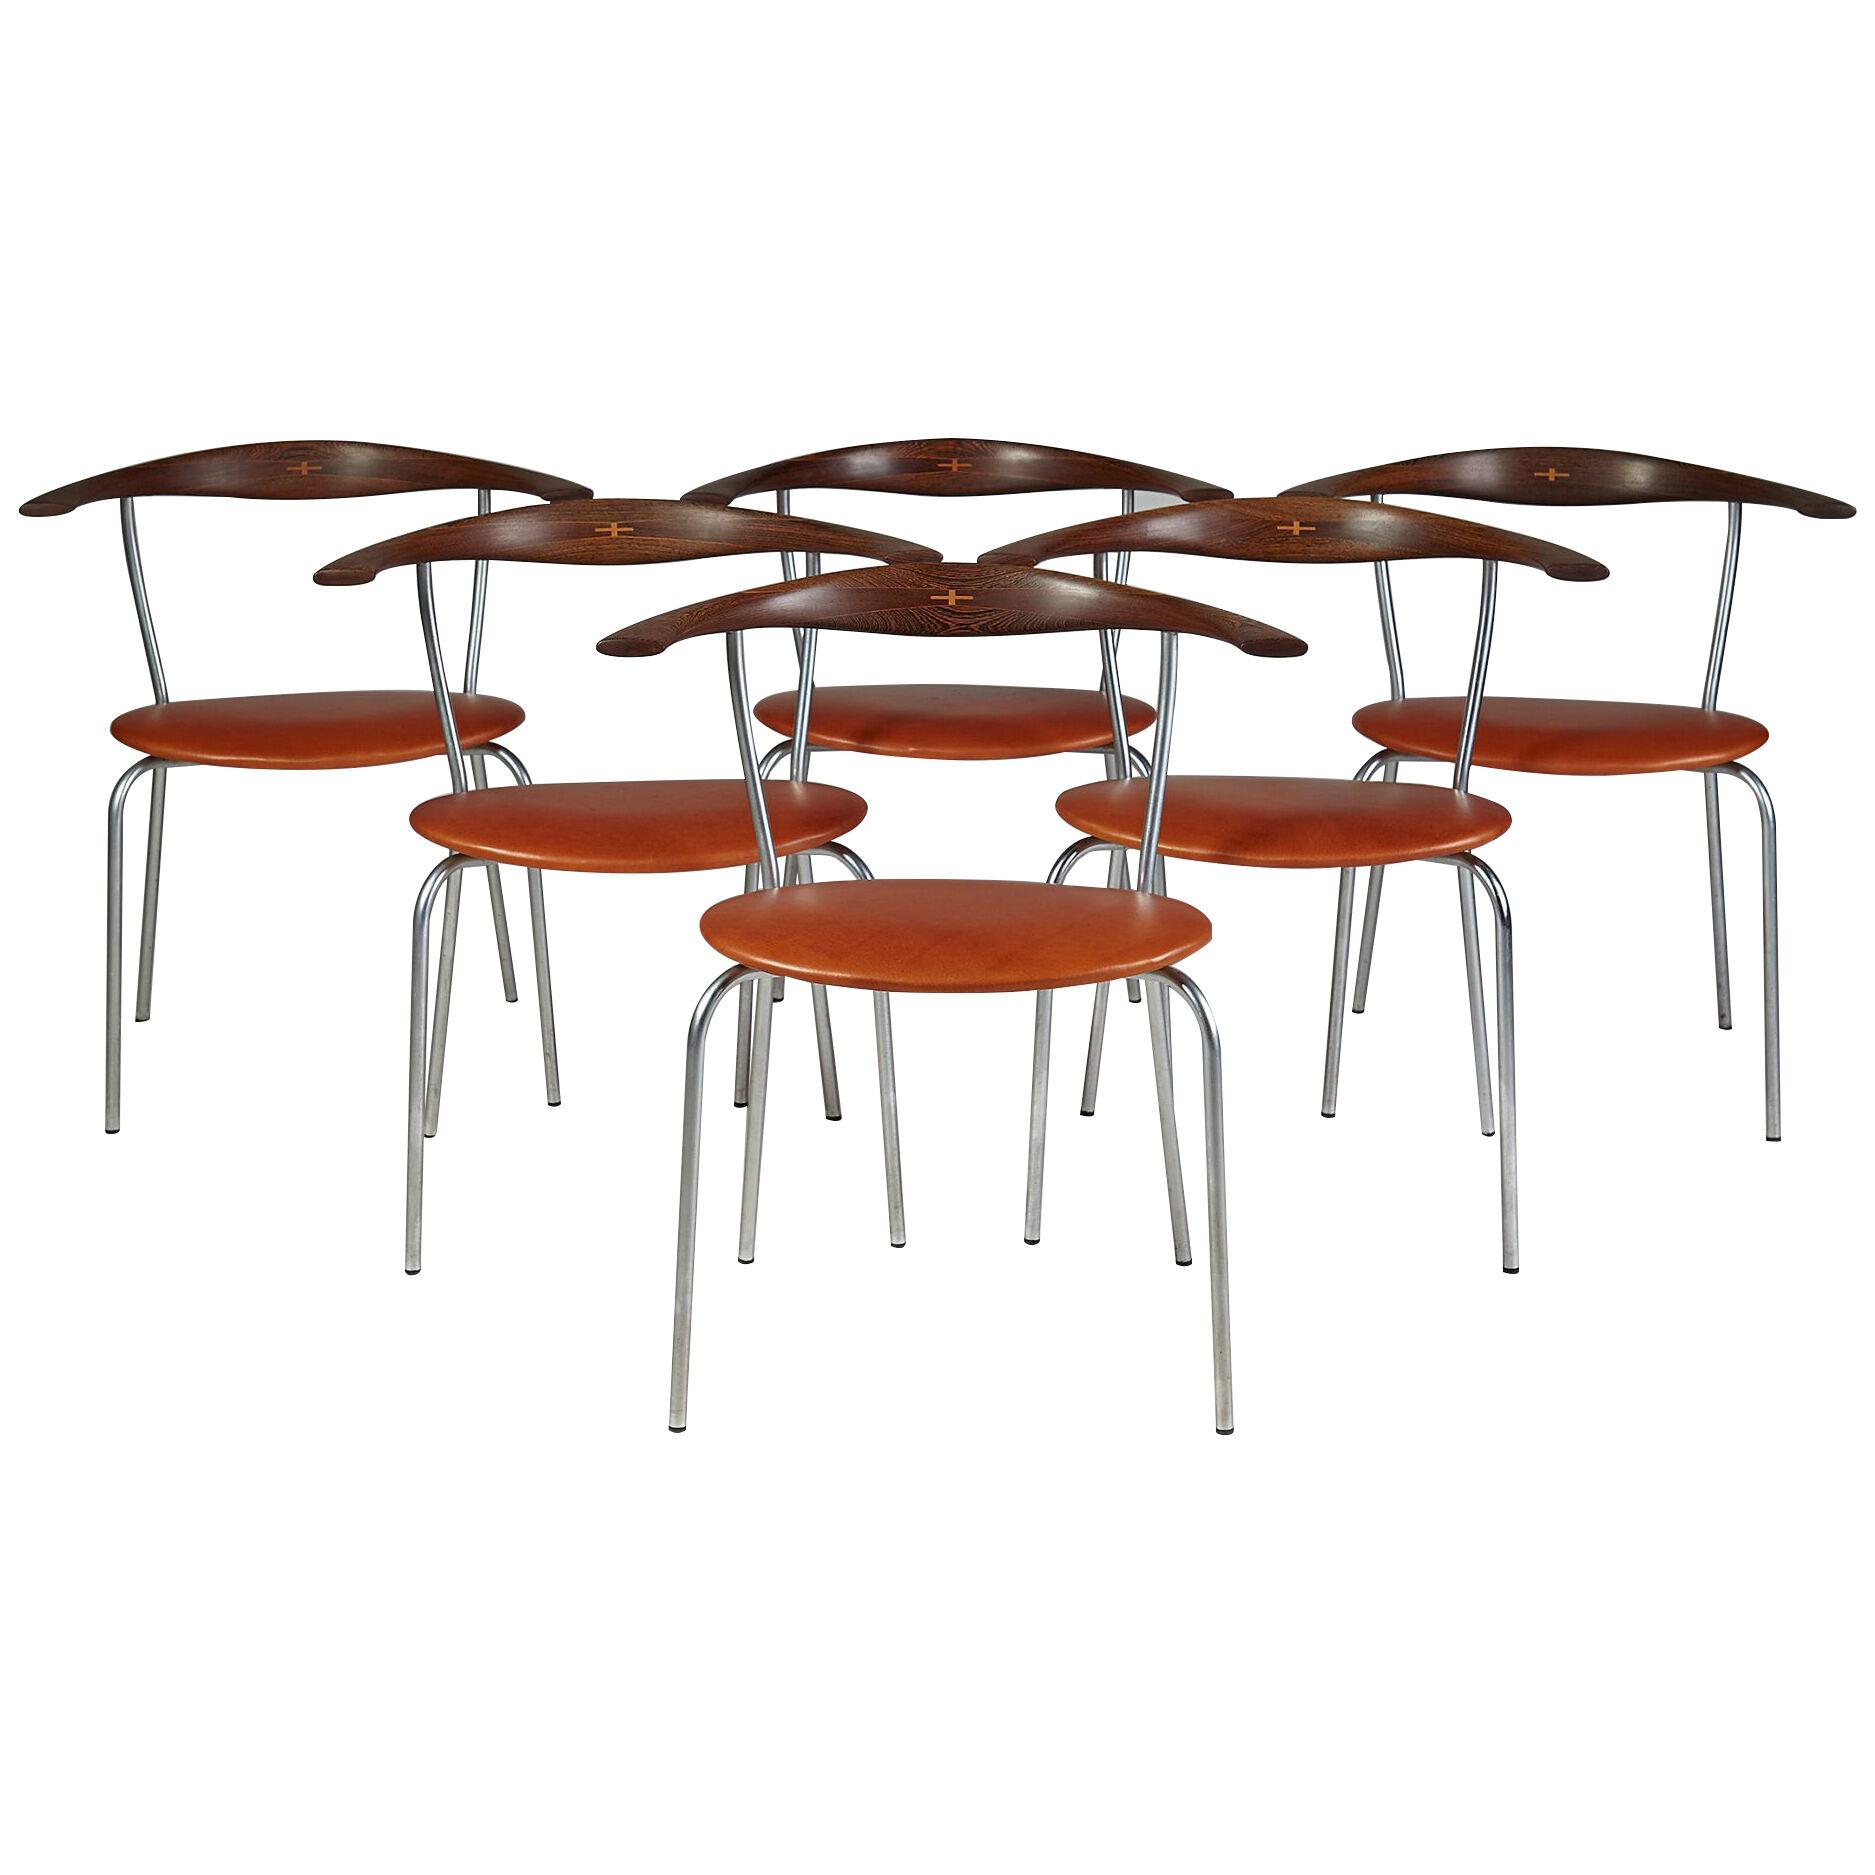 Dining chairs JH 701 designed by Hans Wegner for Johannes Hansen,